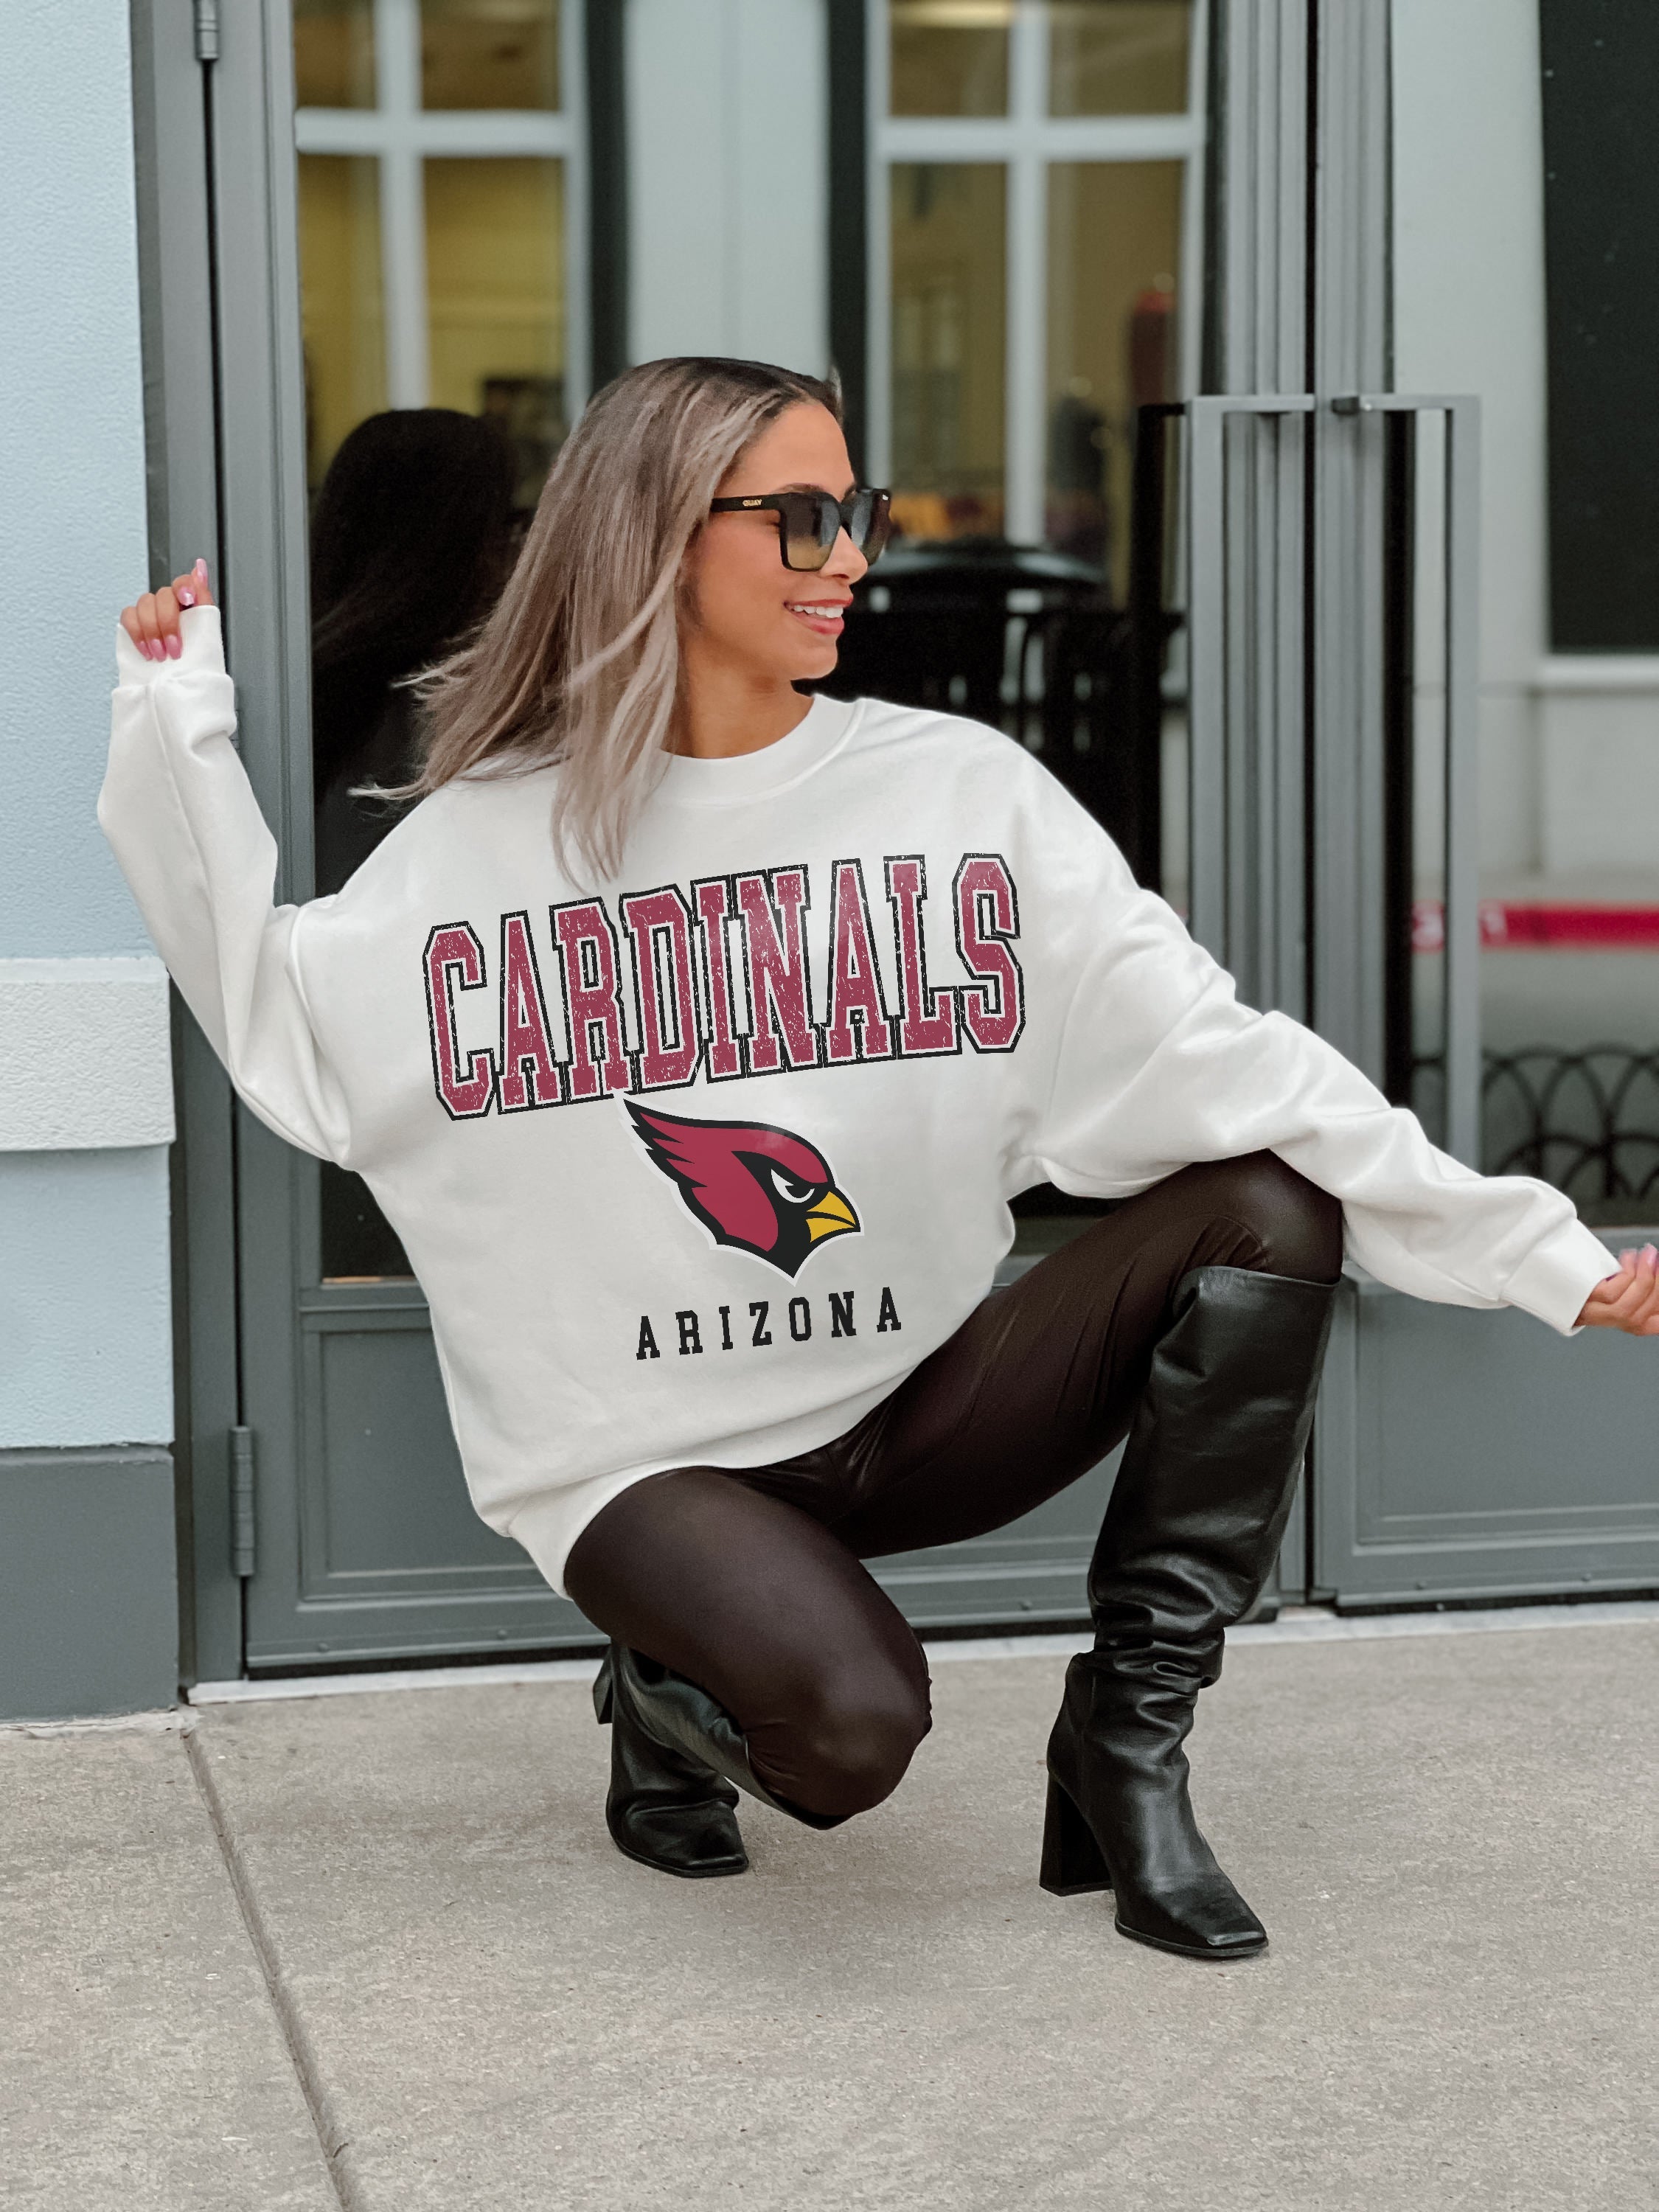  Cardinals Sweatshirt